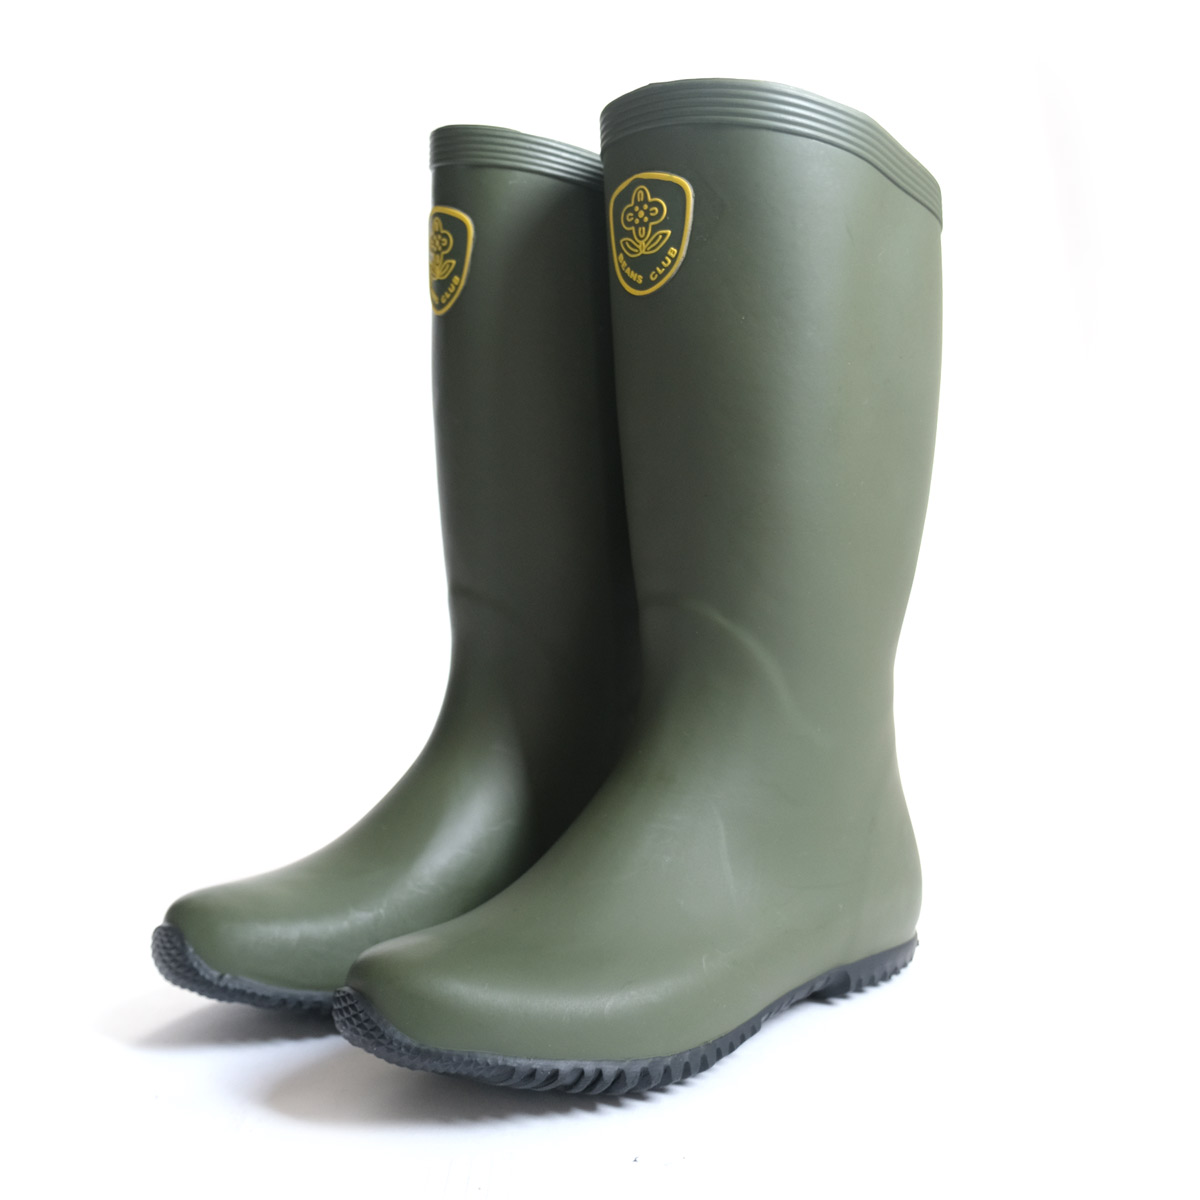 レインブーツ 防水ブーツ 長靴 レディース メンズ ラバーブーツ 園芸ブーツ ガーデニング 農作業 履きやすい 歩きやすい